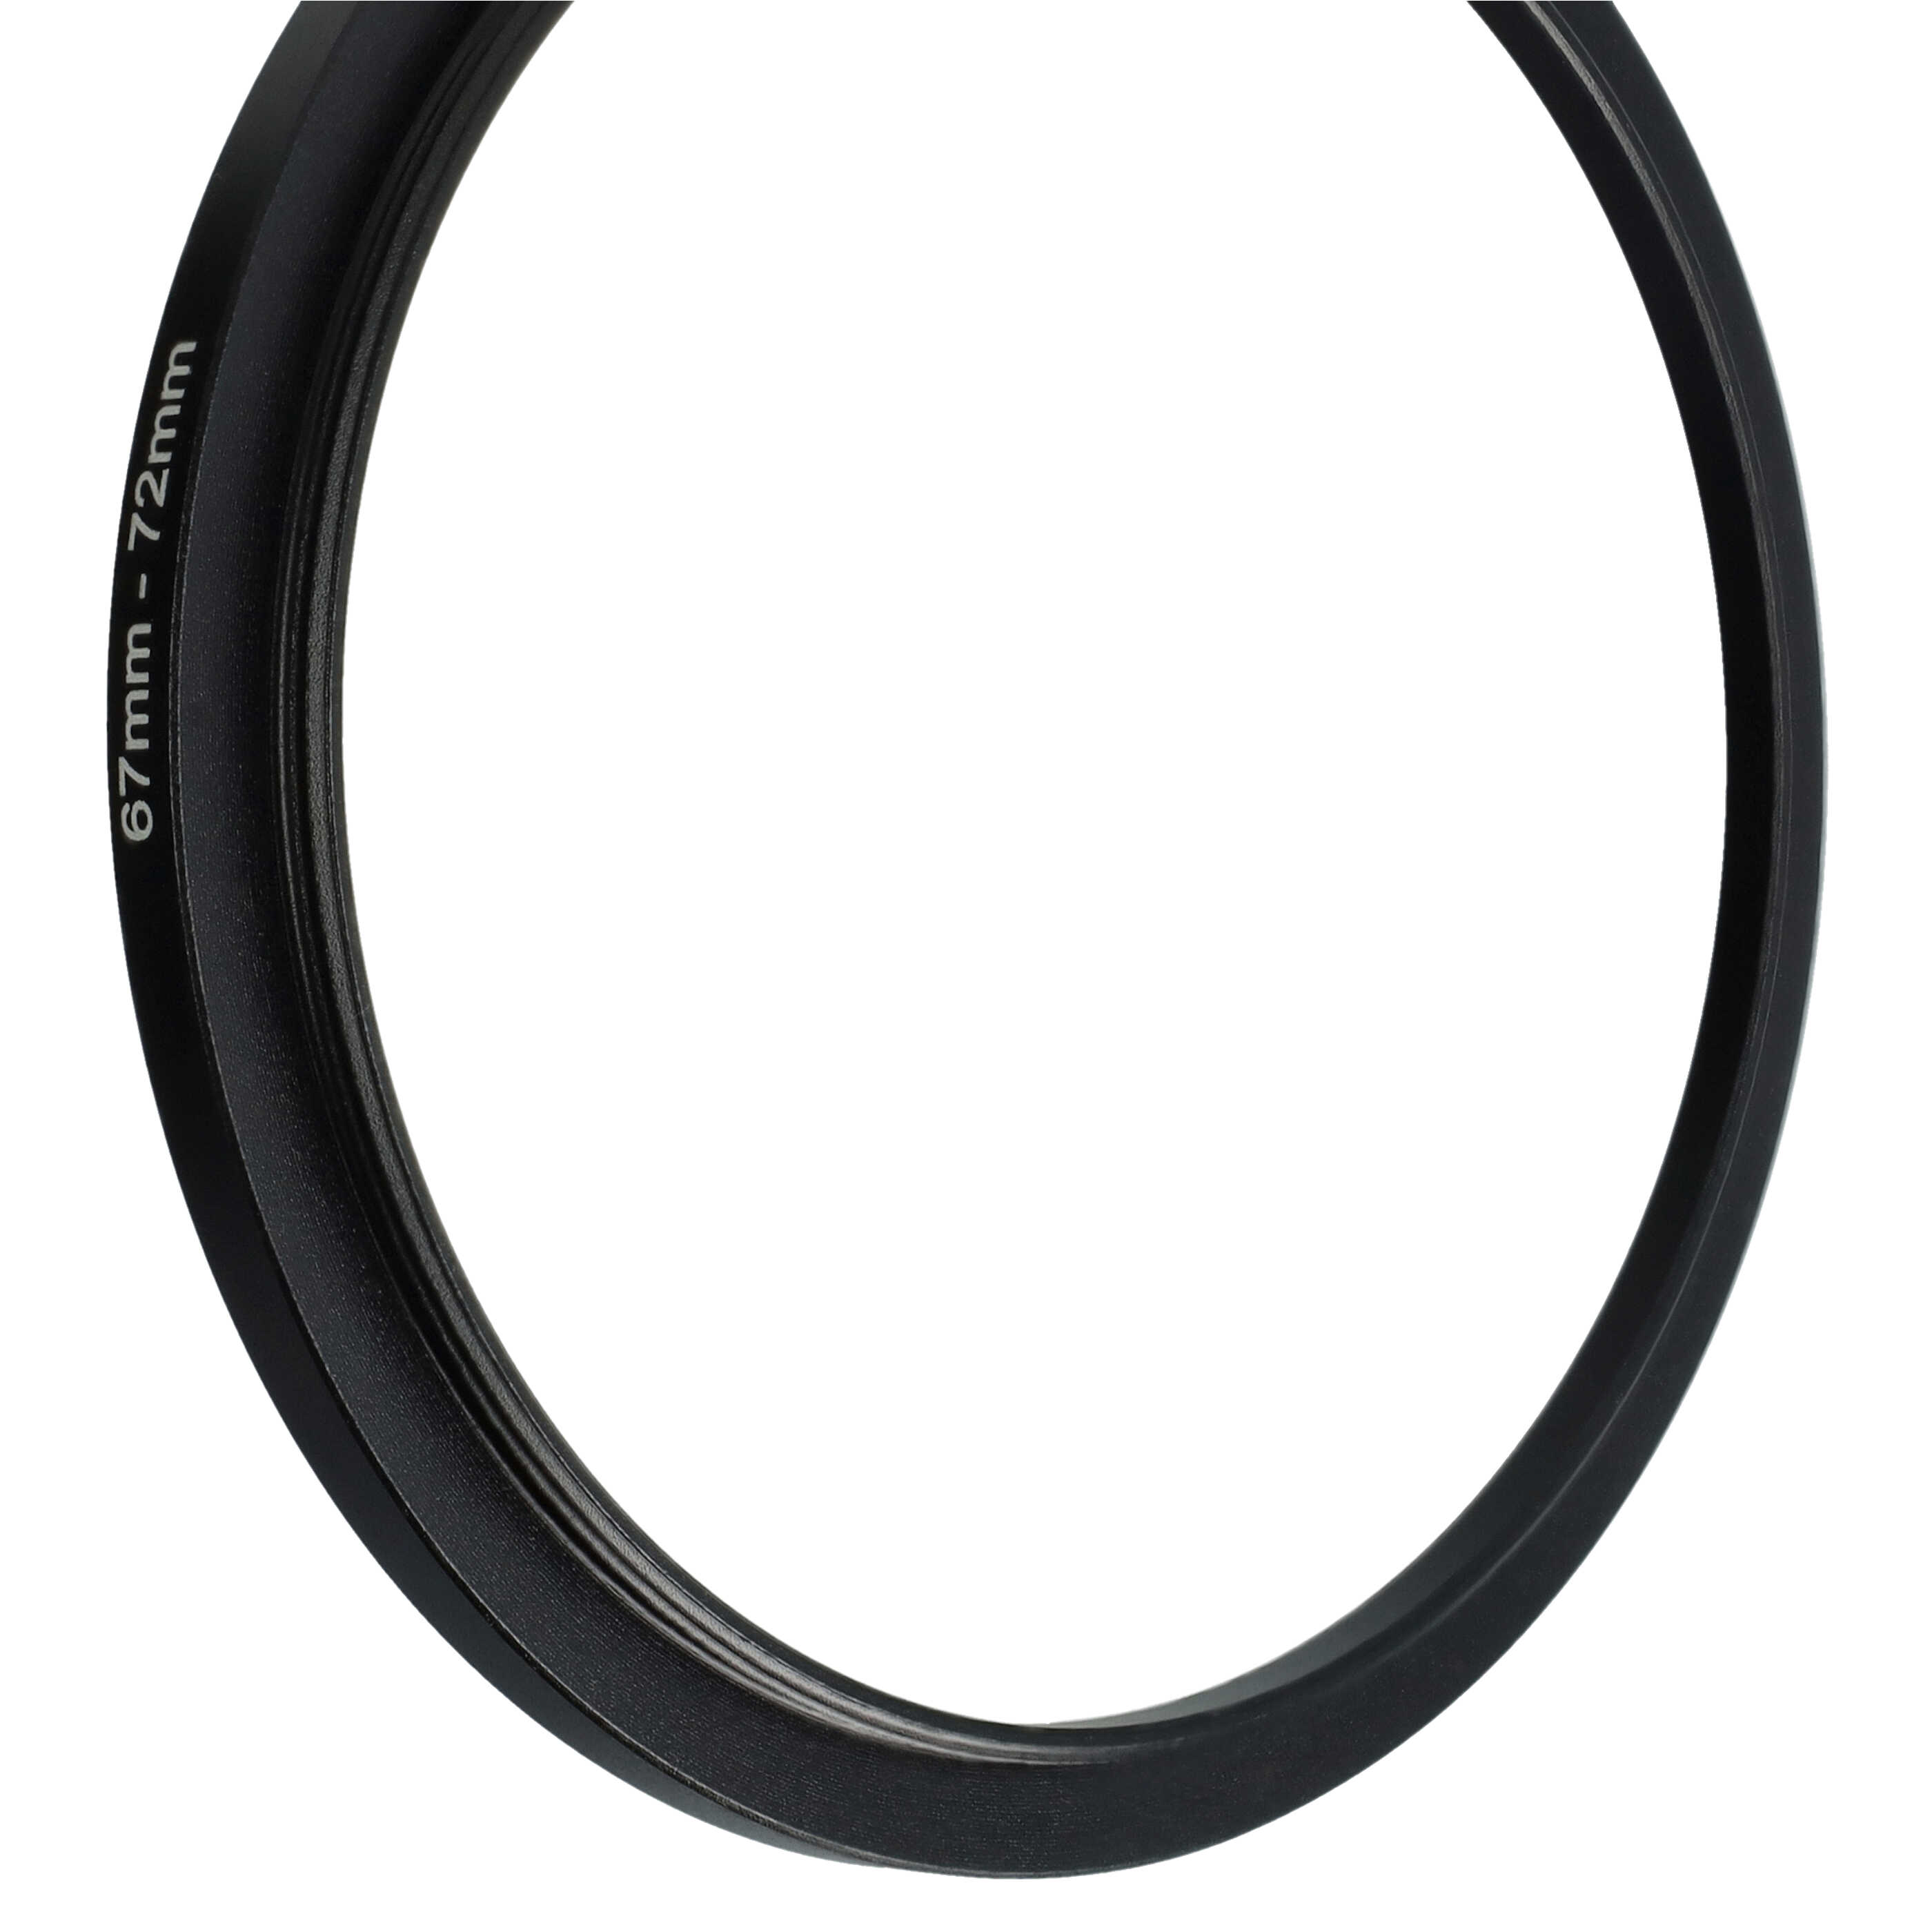 Step-Up-Ring Adapter 67 mm auf 72 mm passend für diverse Kamera-Objektive - Filteradapter